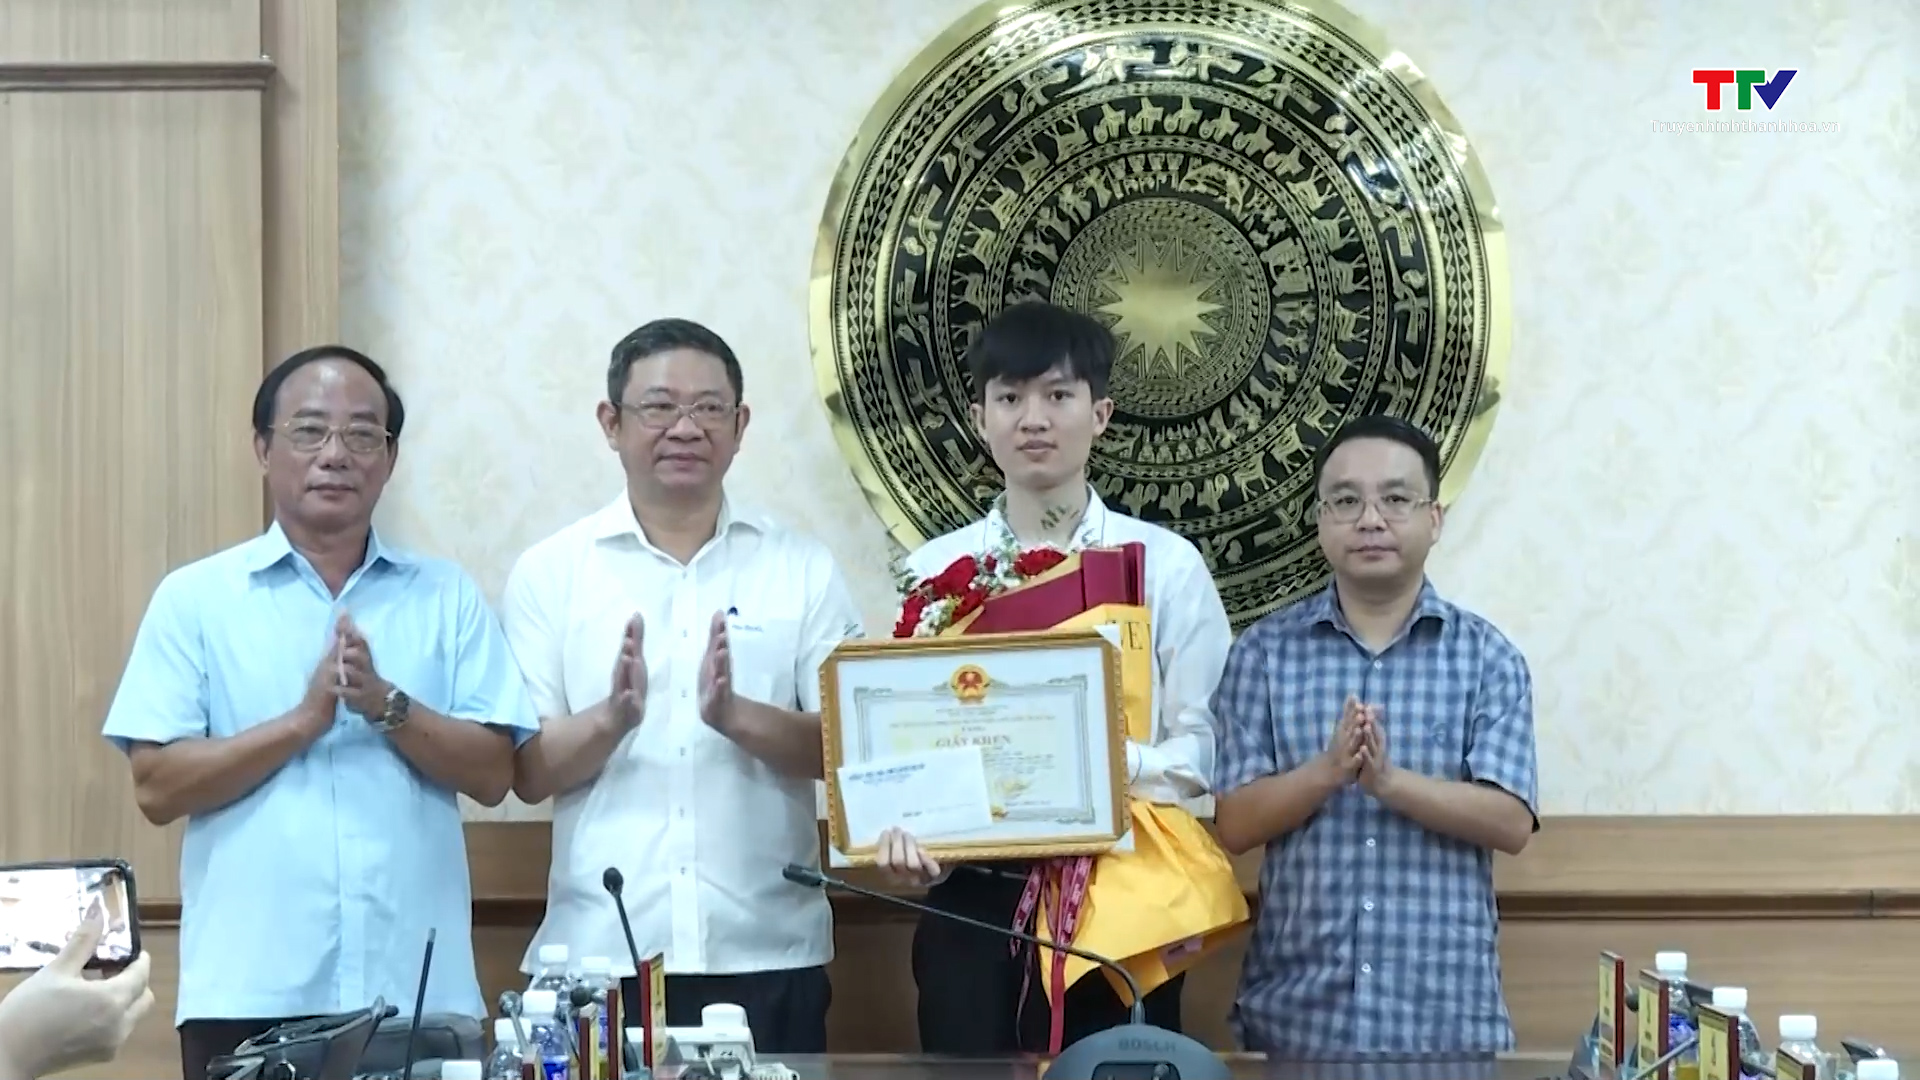 Huyện Triệu Sơn khen thưởng học sinh đạt huy chương Bạc tại kỳ thi Olympic Vật lý Quốc tế  - Ảnh 2.